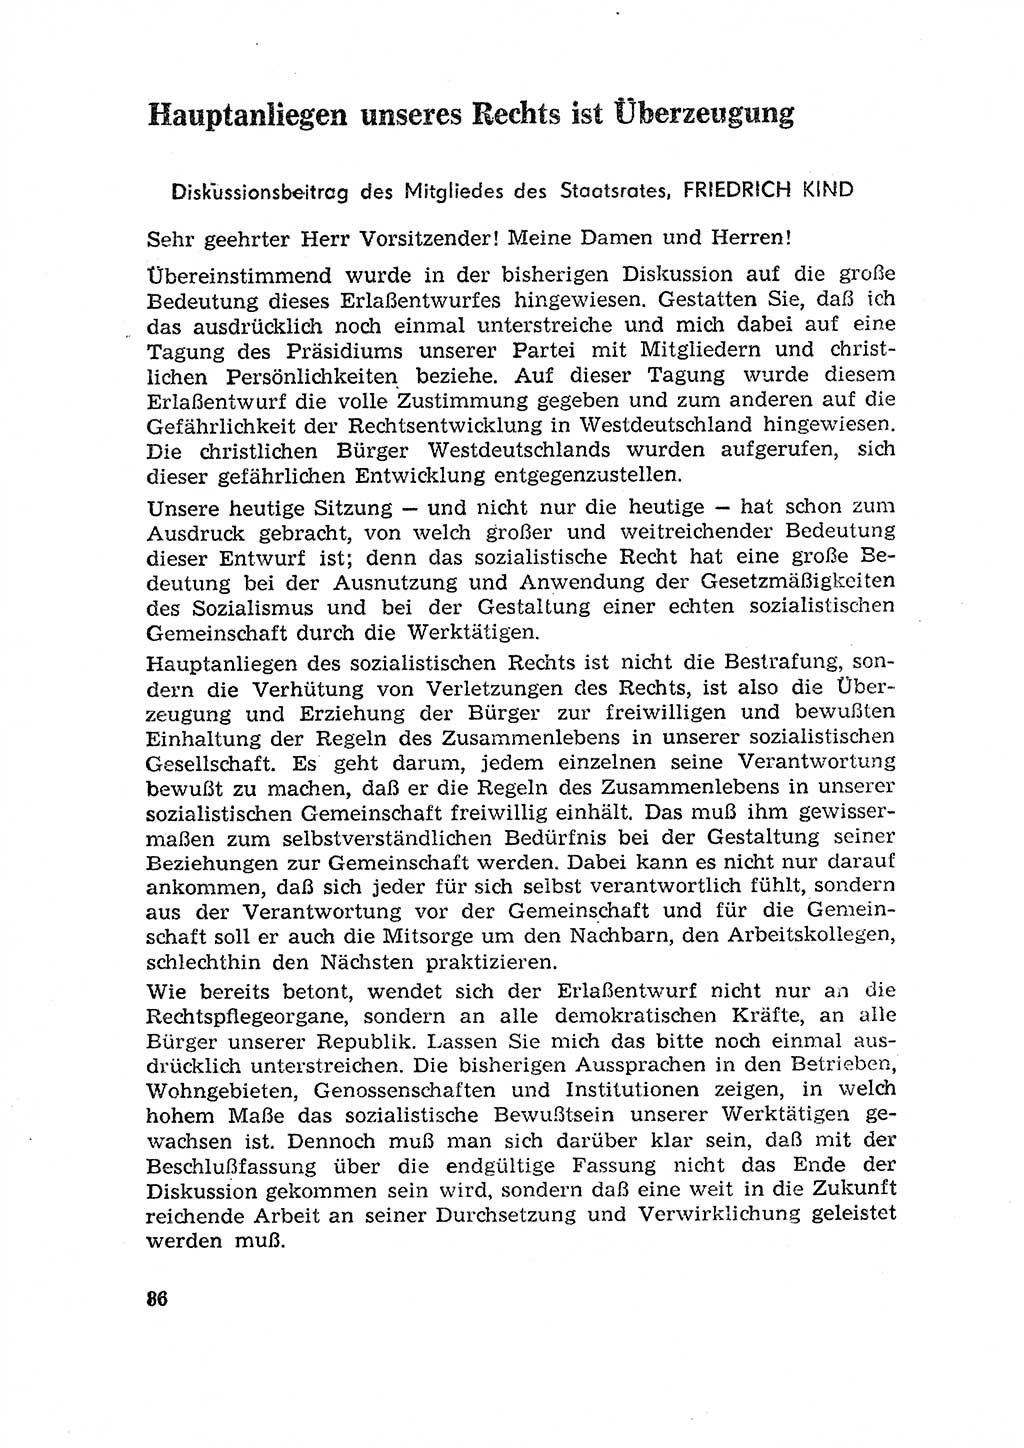 Rechtspflegeerlaß [Deutsche Demokratische Republik (DDR)] 1963, Seite 86 (R.-Pfl.-Erl. DDR 1963, S. 86)